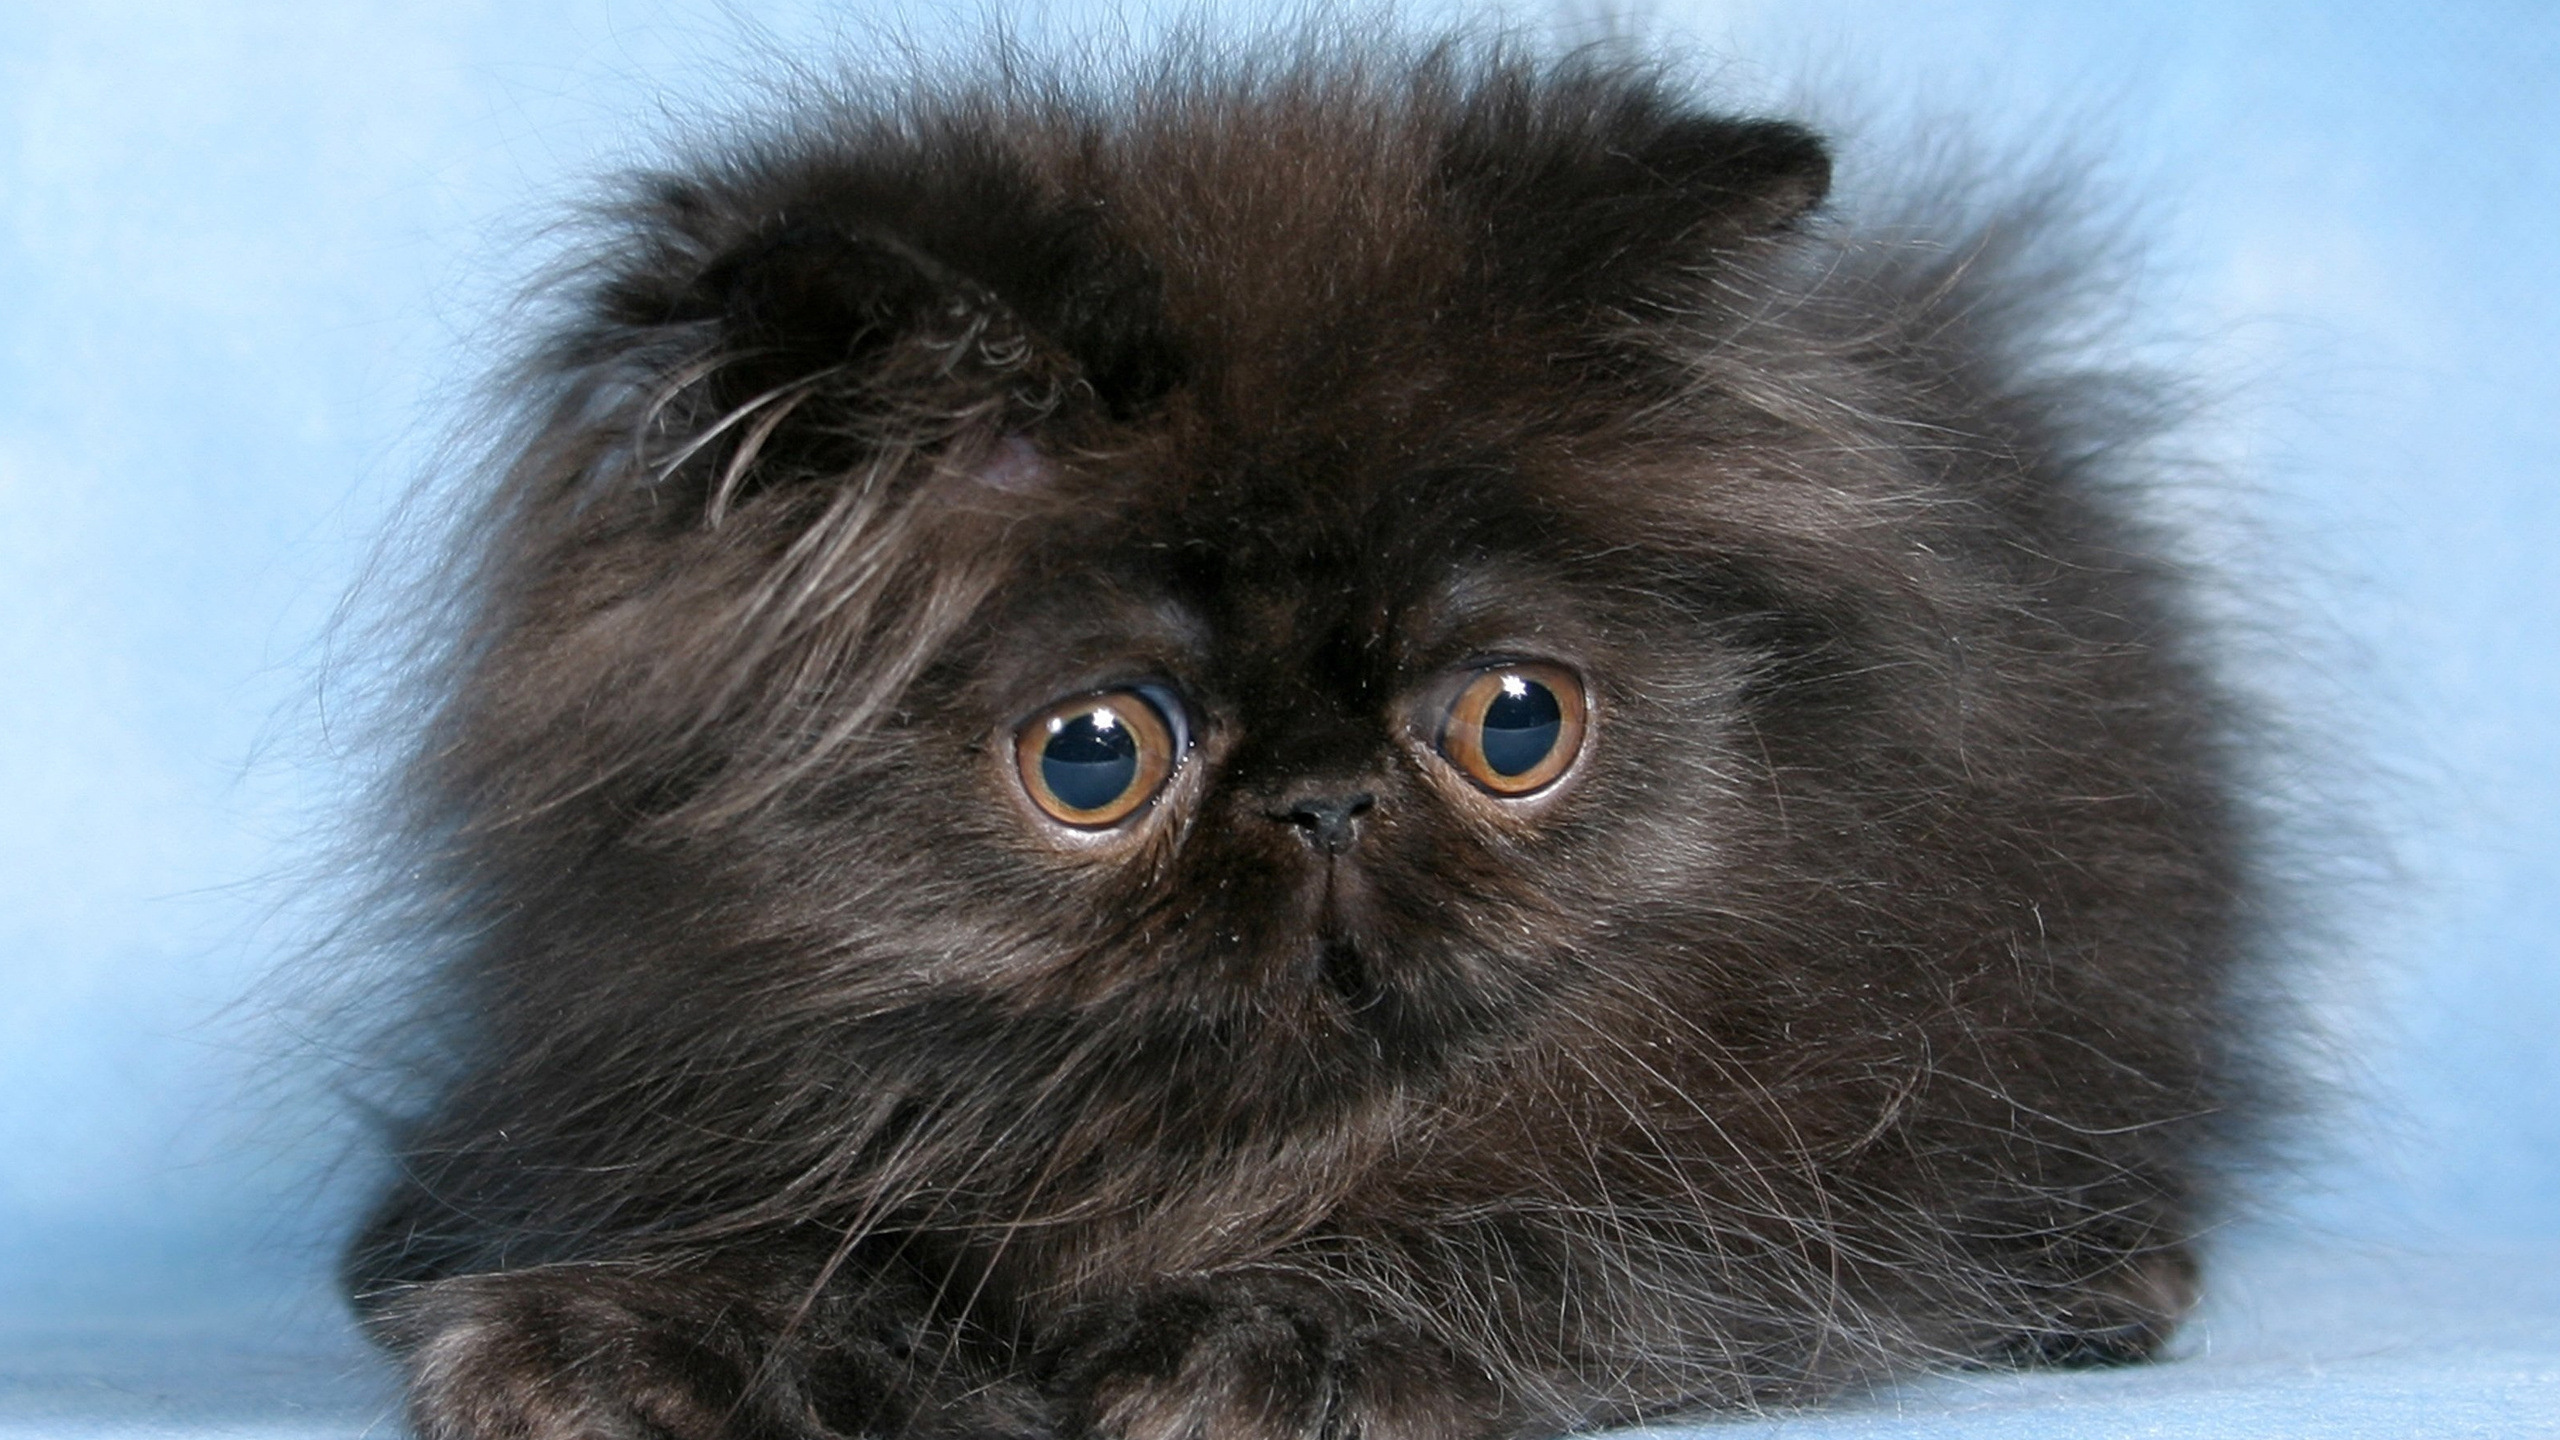 波斯猫, 小猫, 喜马拉雅山猫, 黑色的猫, 可爱 壁纸 2560x1440 允许